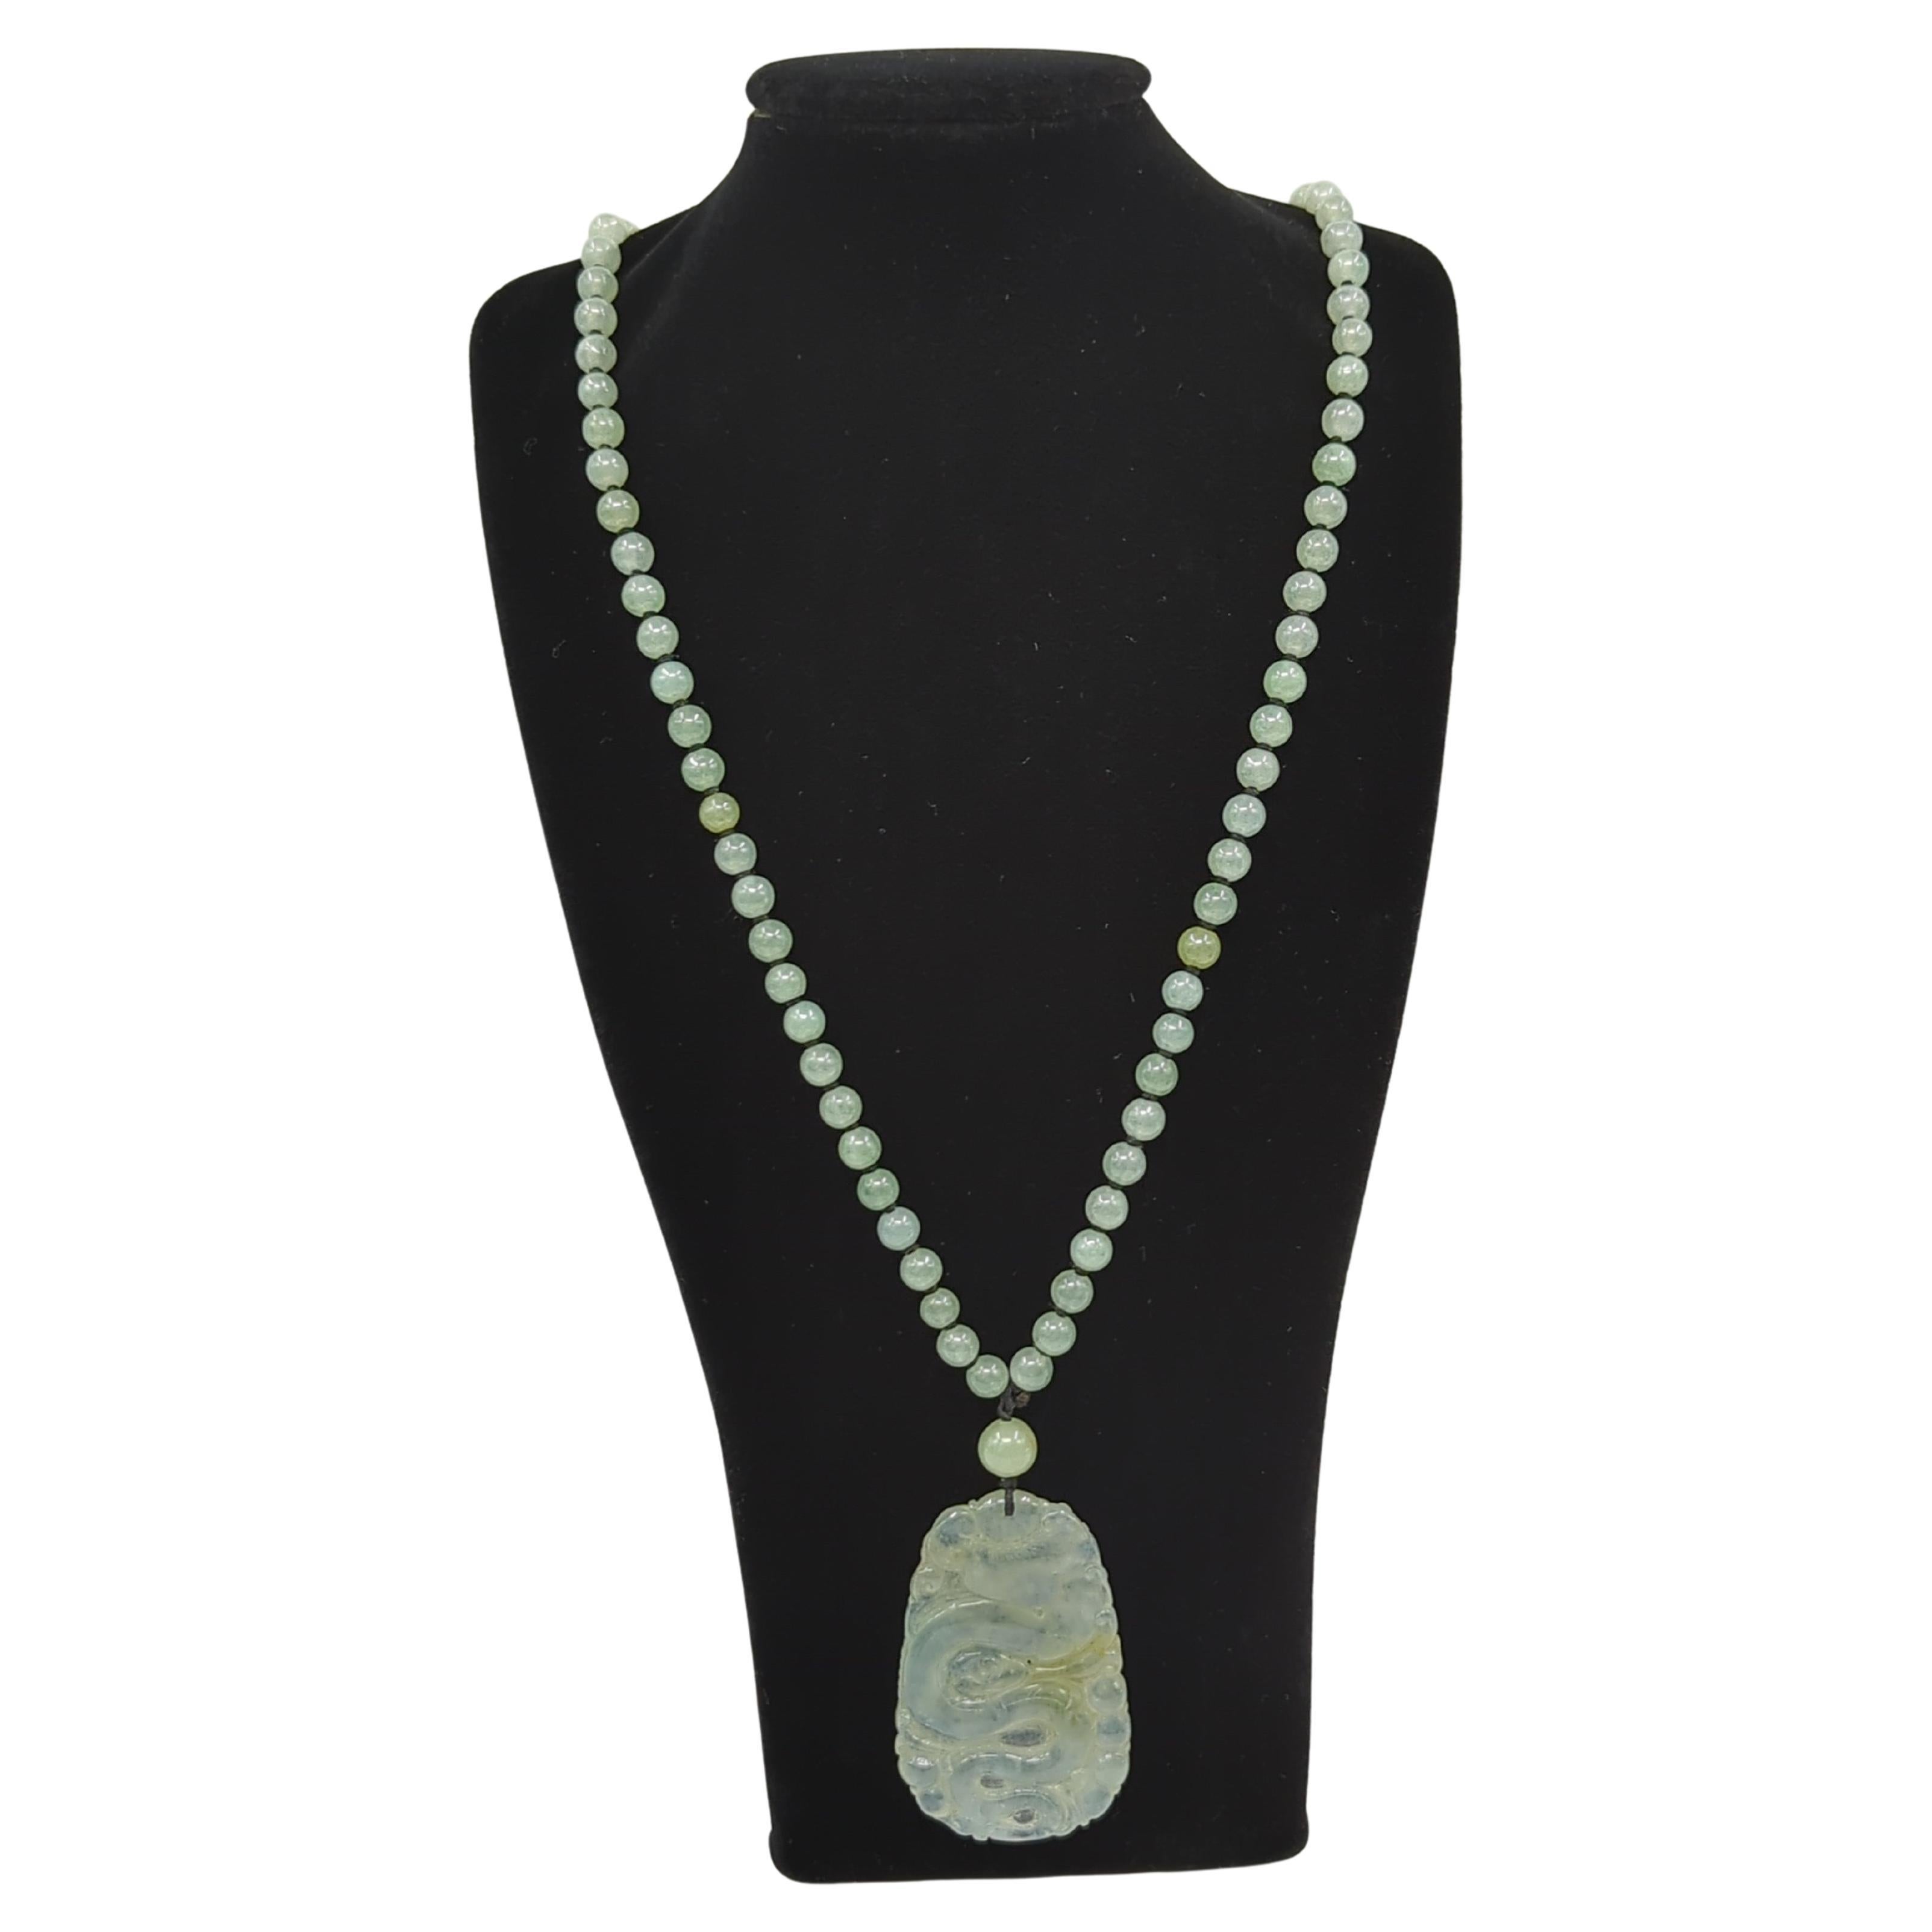 Ce collier de perles de jadéite exquise présente un fil de 25 pouces de perles de jadéite exquise de grade A (environ D:6mm), chacune soigneusement choisie pour sa délicate teinte claire et glacée, certaines étant accentuées par de subtils reflets